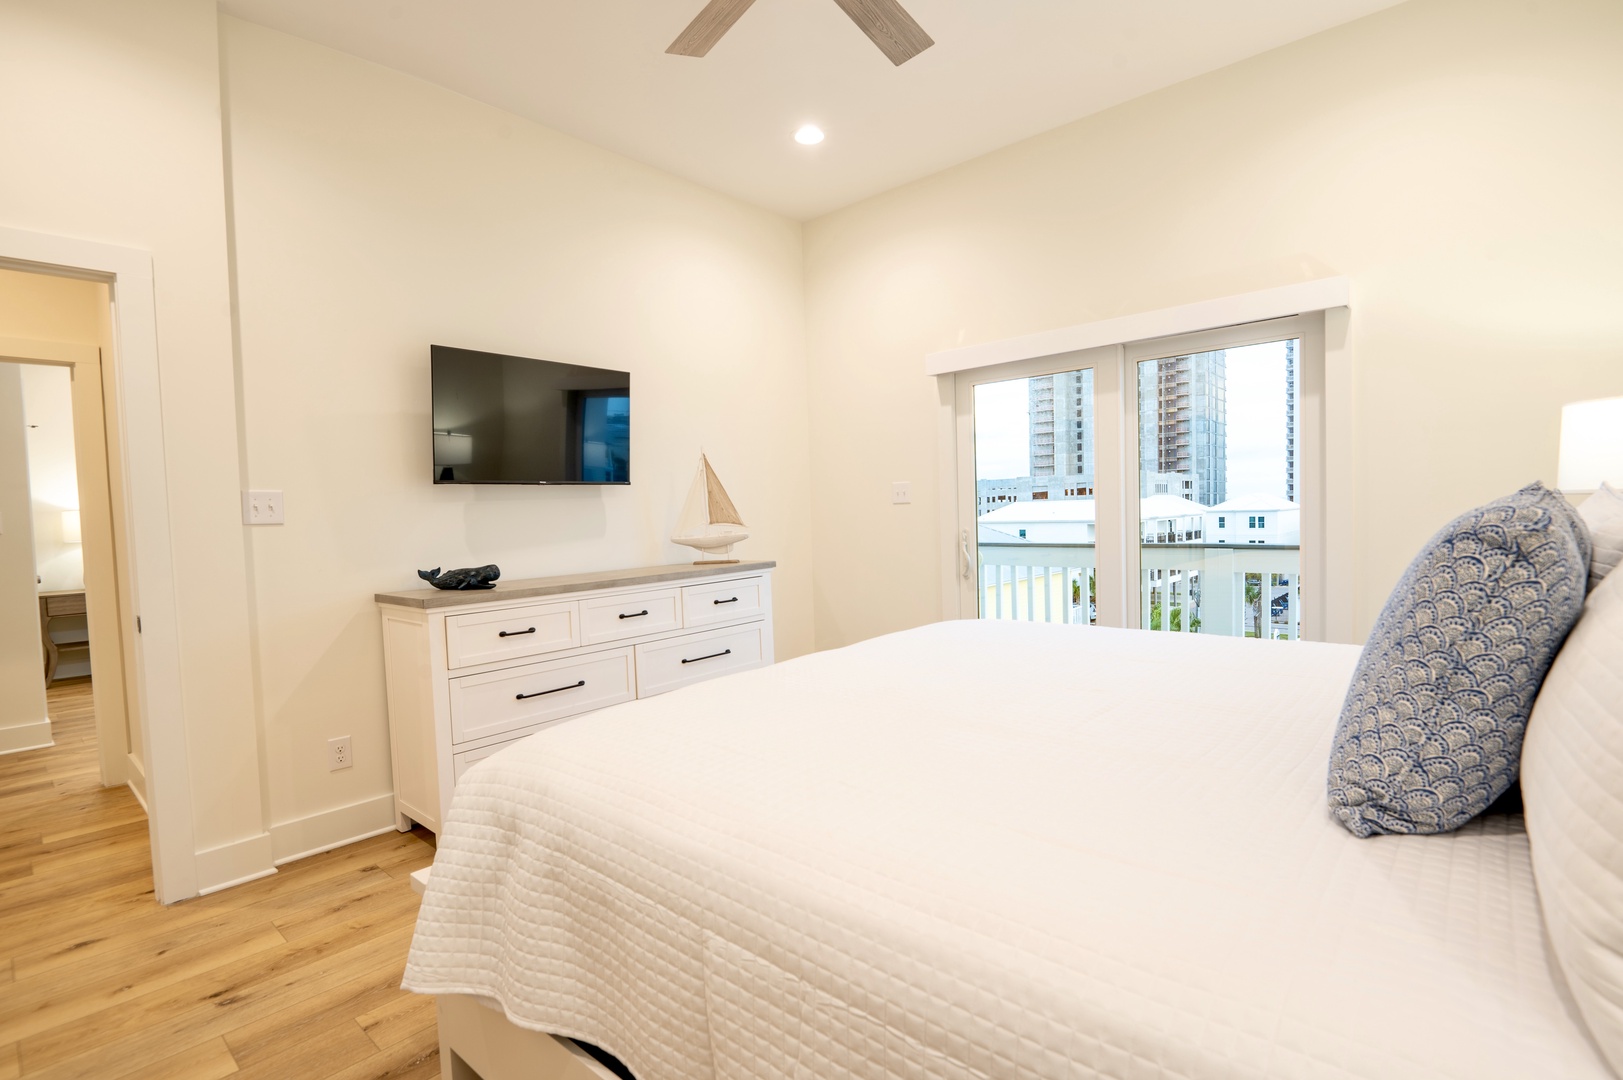 4th floor - Bedroom 8 with King bed, Smart TV, balcony, and en-suite